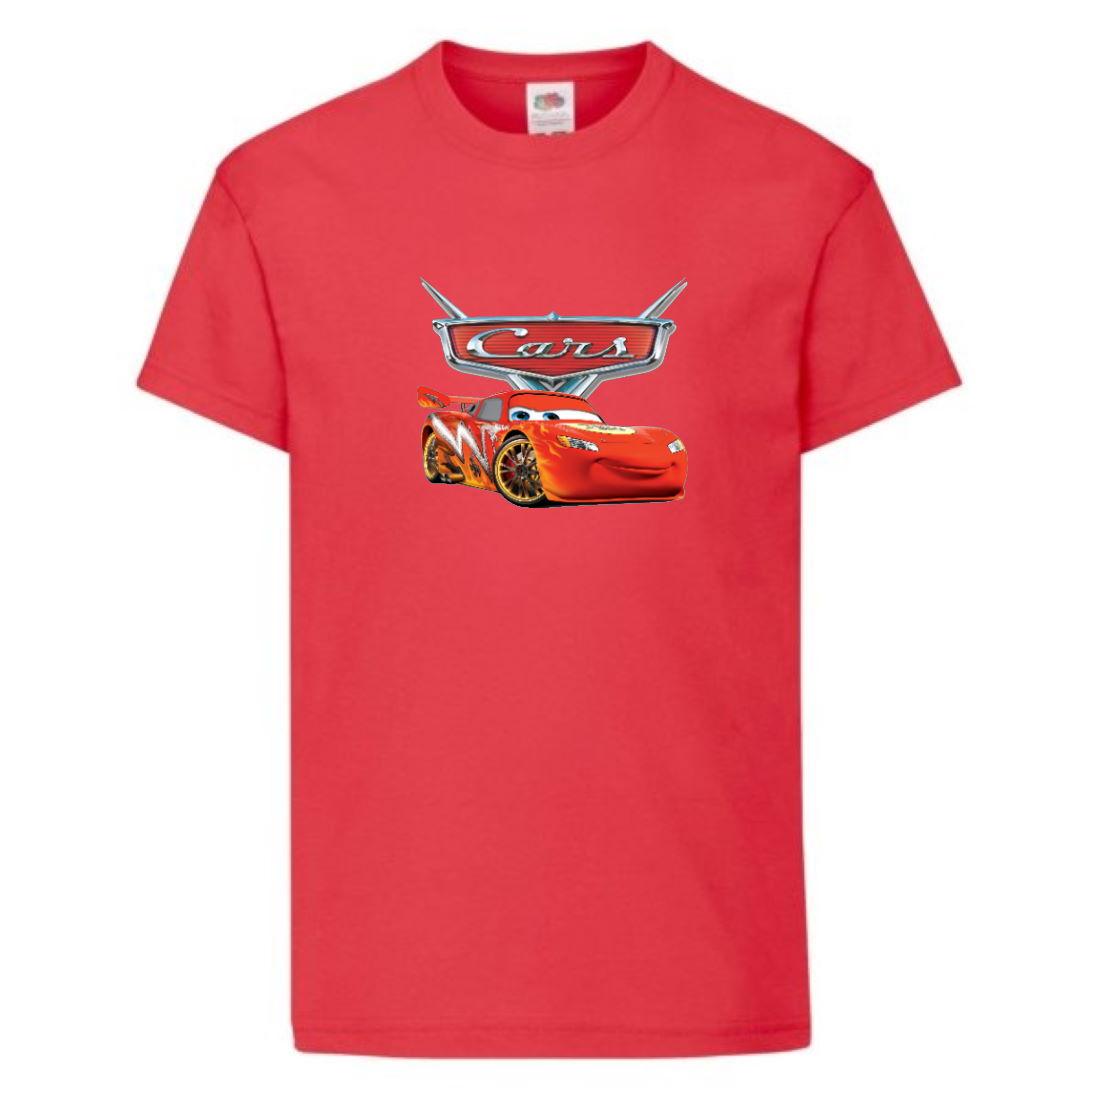 Футболка дитяча Тачки (Cars-02) червона, розмір 98-104-116-128-140-152-164 см